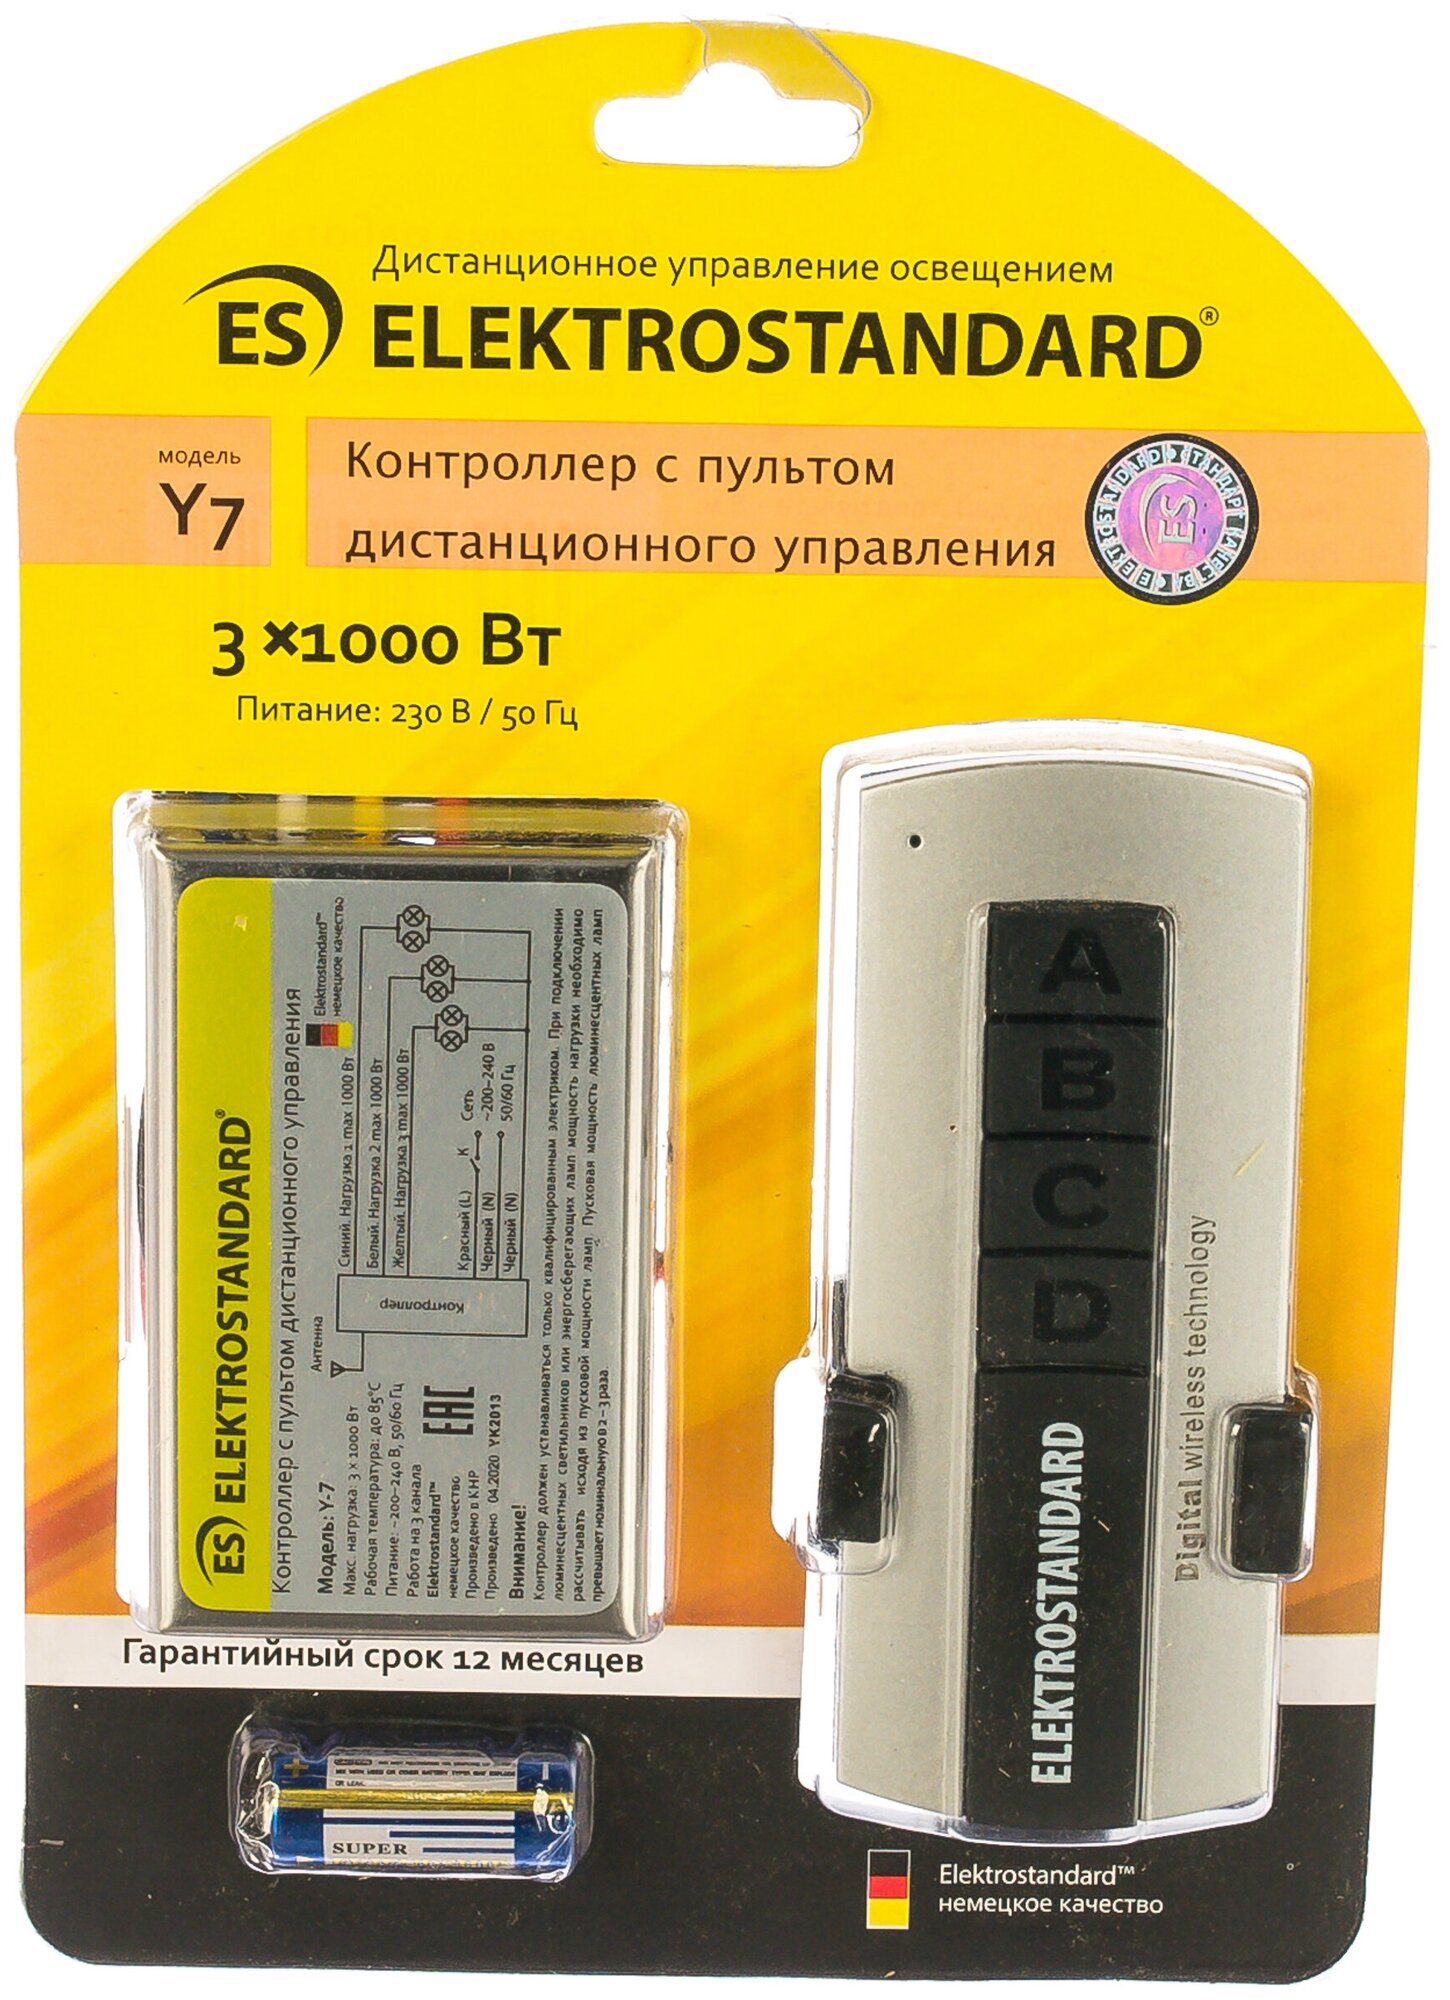 3-канальный контроллер пульт для дистанционного управления освещением Y7 Elektrostandard - фото №20